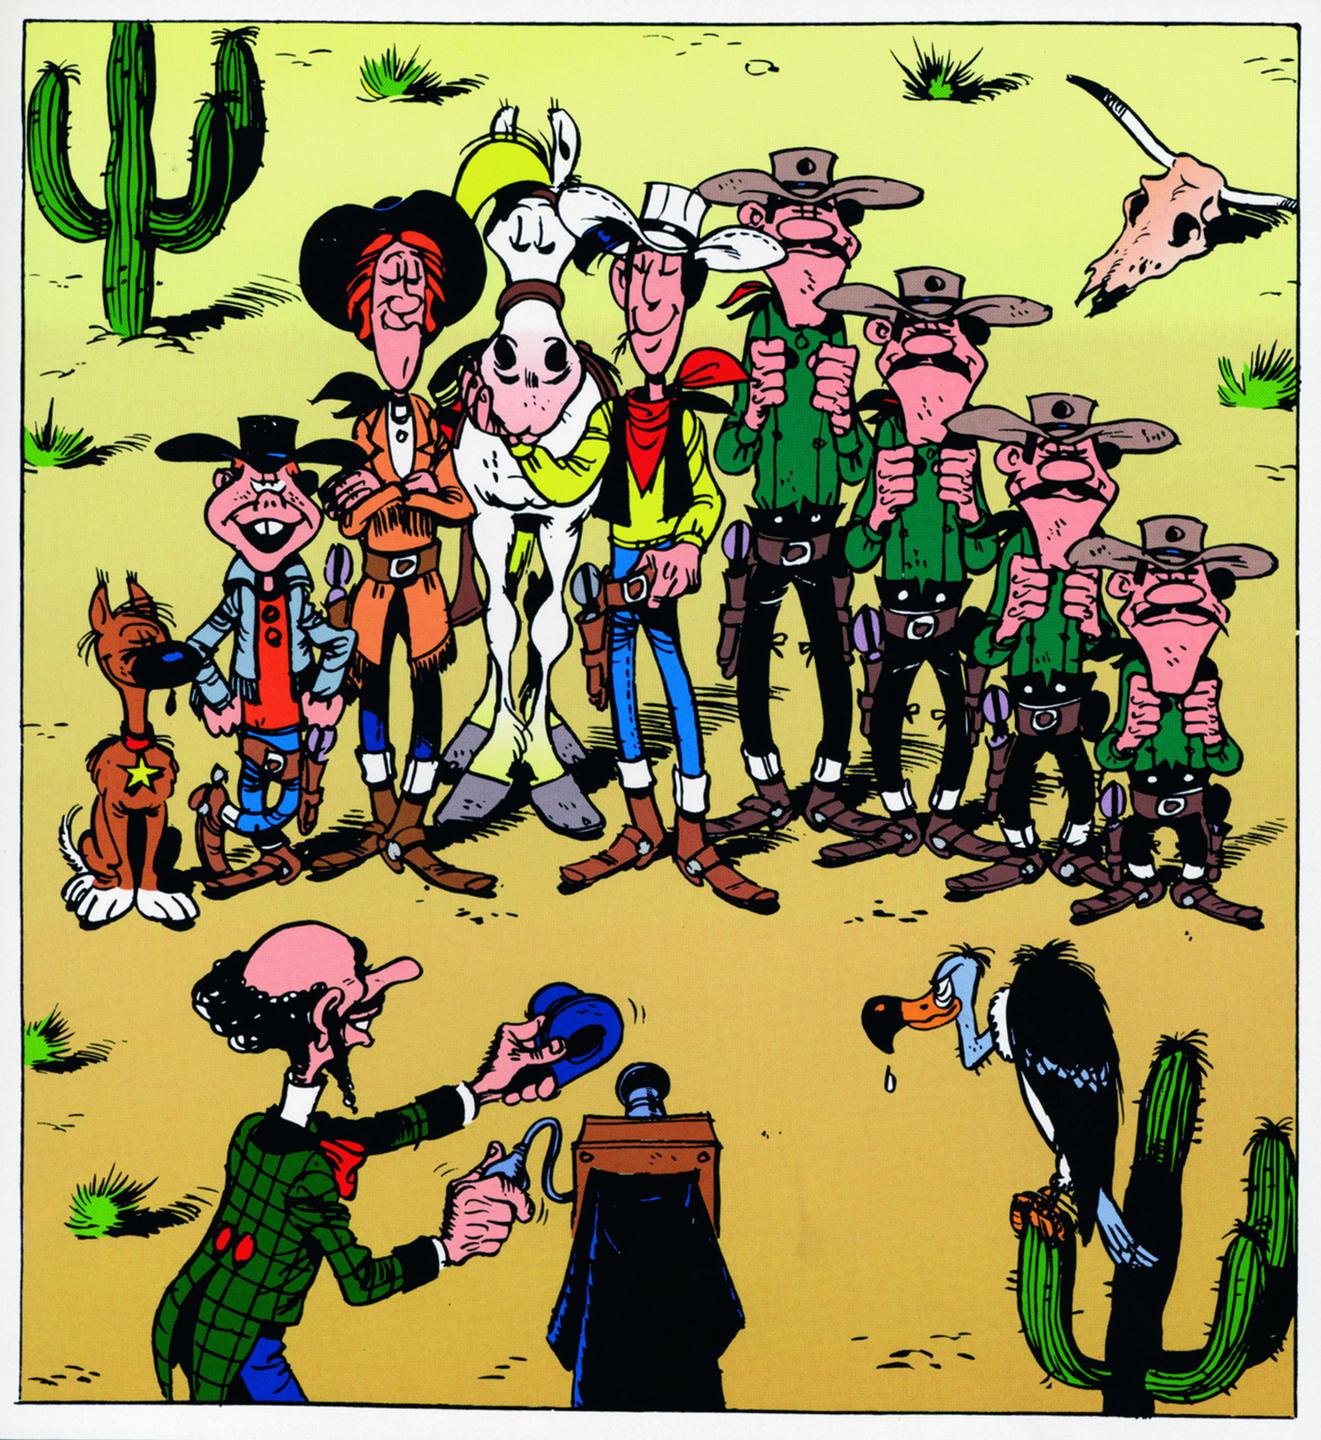 Auf diesem Comicbild sind verschiedene Figuren zu einem Gruppenfoto drapiert: Lucky Luke, Jolly Jumper, Rantanplan, die Daltons, Calamity Jane und Billy the Kid.